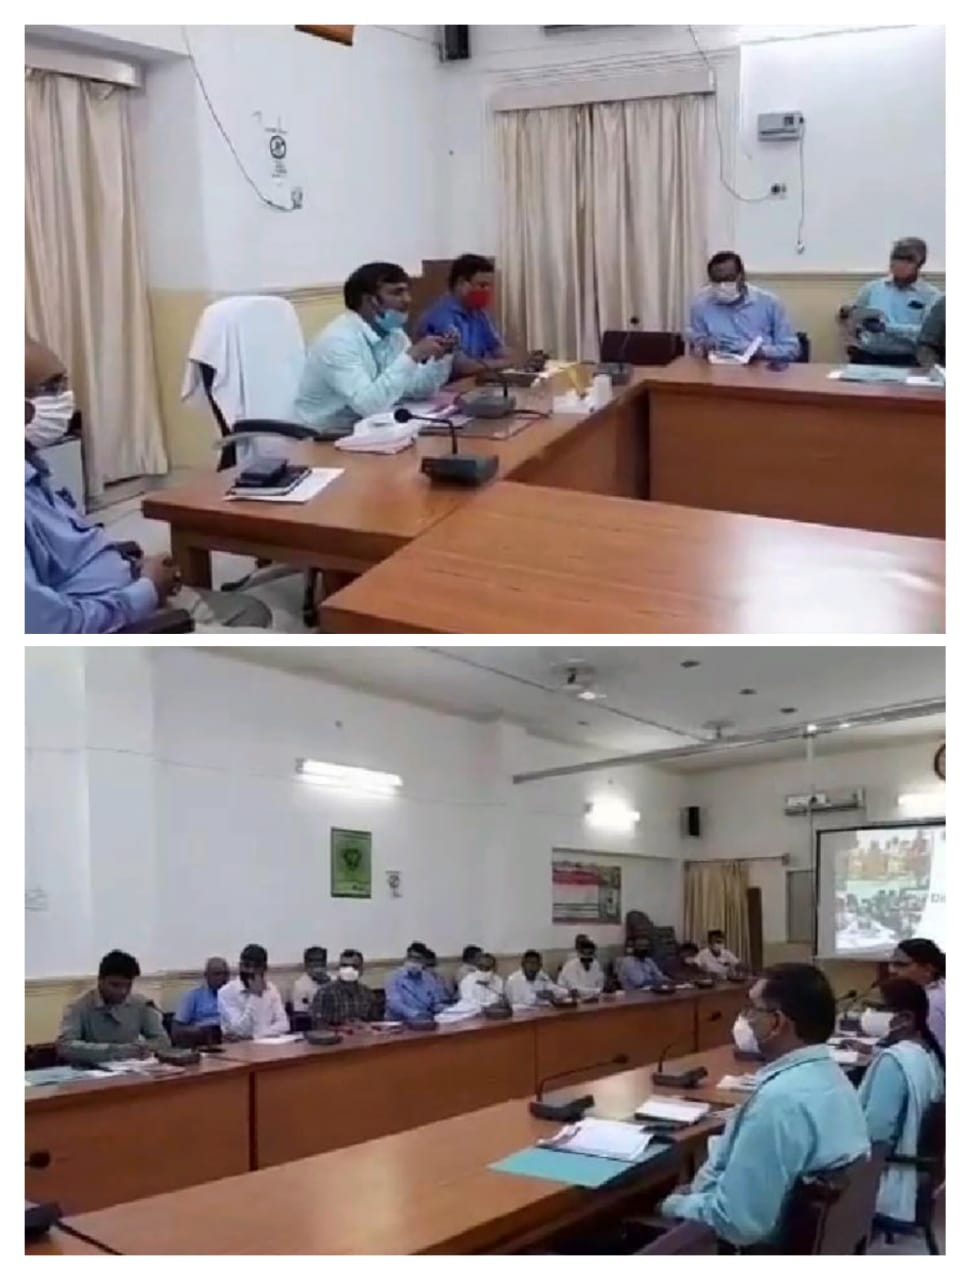 मिर्जापुर के जिला कलेक्ट्रेट सभागार में जिलाधिकारी ने शिक्षा विभाग के अधिकारियों के साथ की बैठक